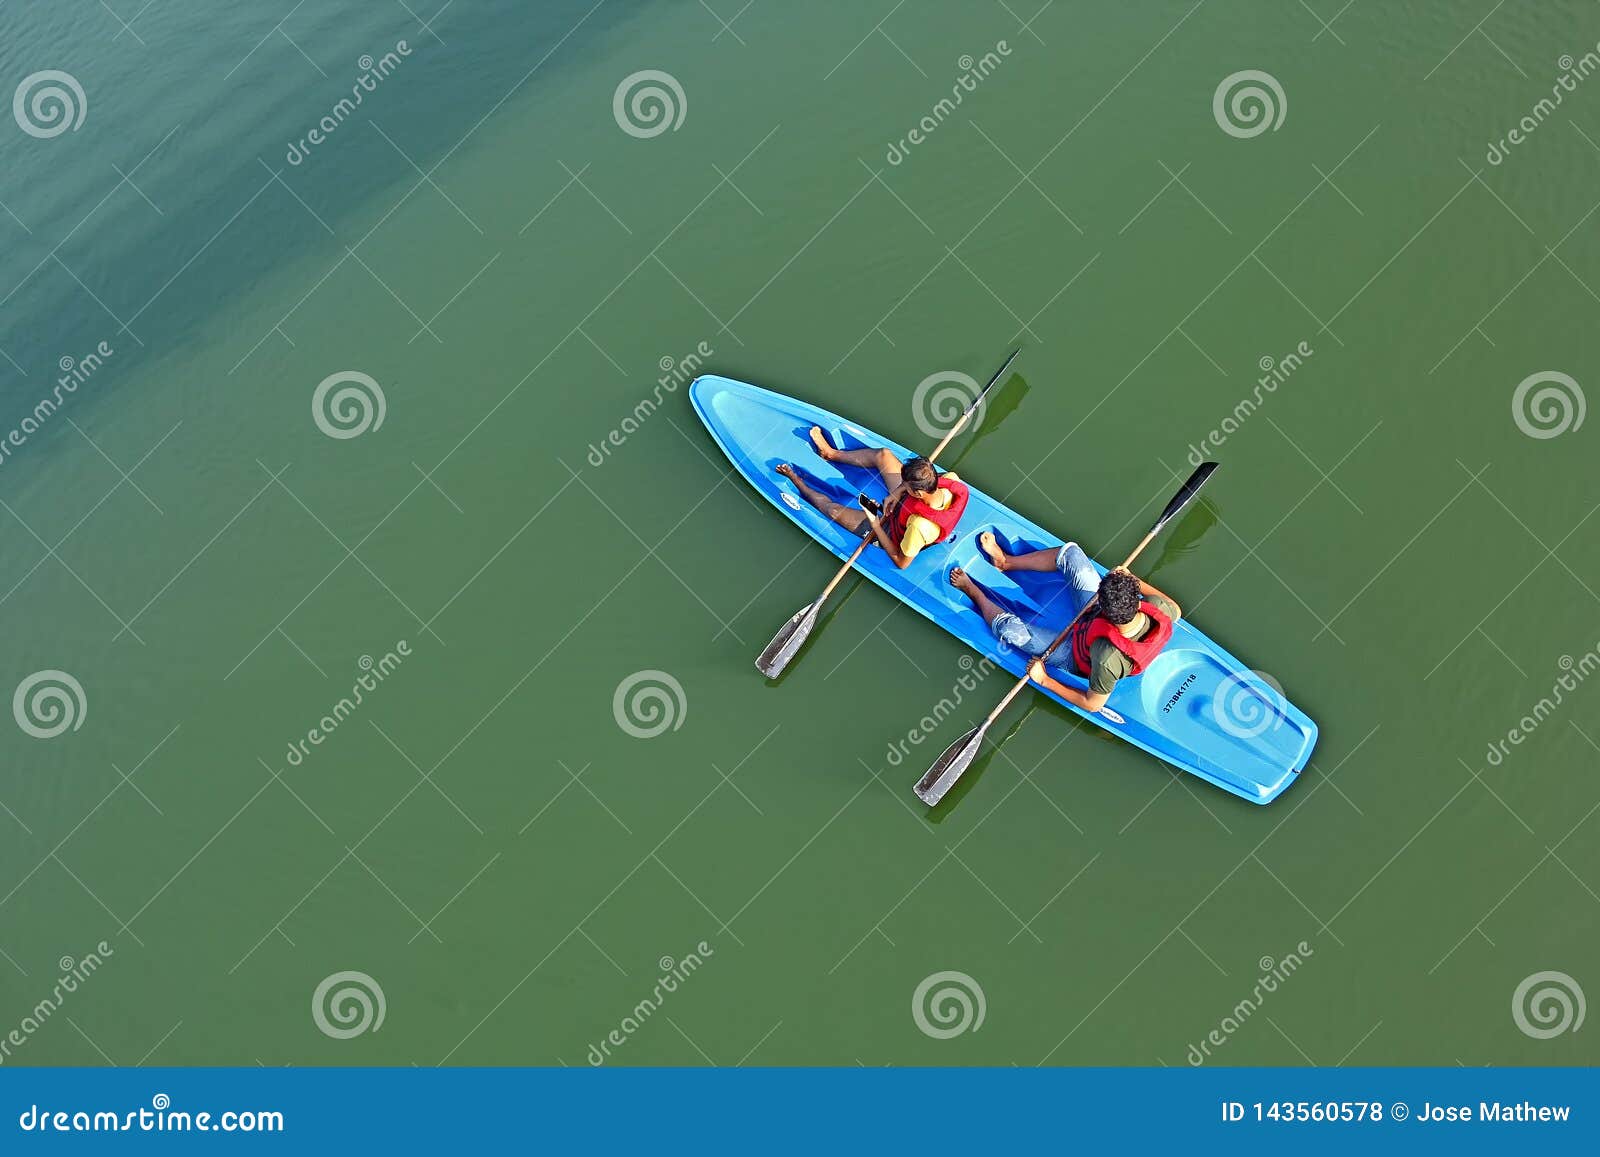 kayaking in backwaters of periyar river in kerala